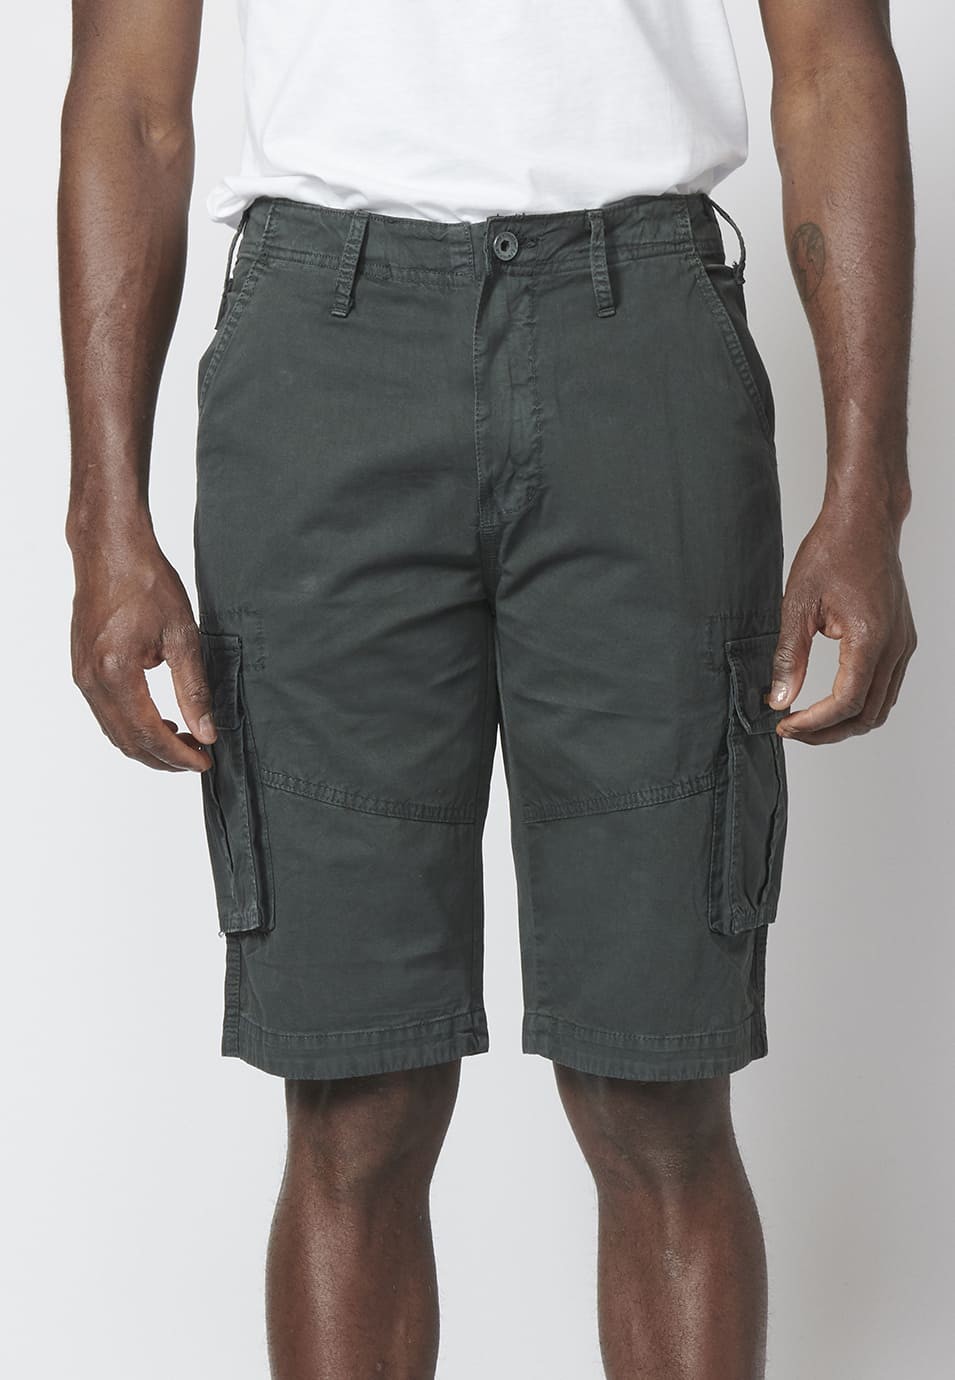 Bermuda pantalón corto estilo cargo para hombre con seis bolsillos color Negro 3